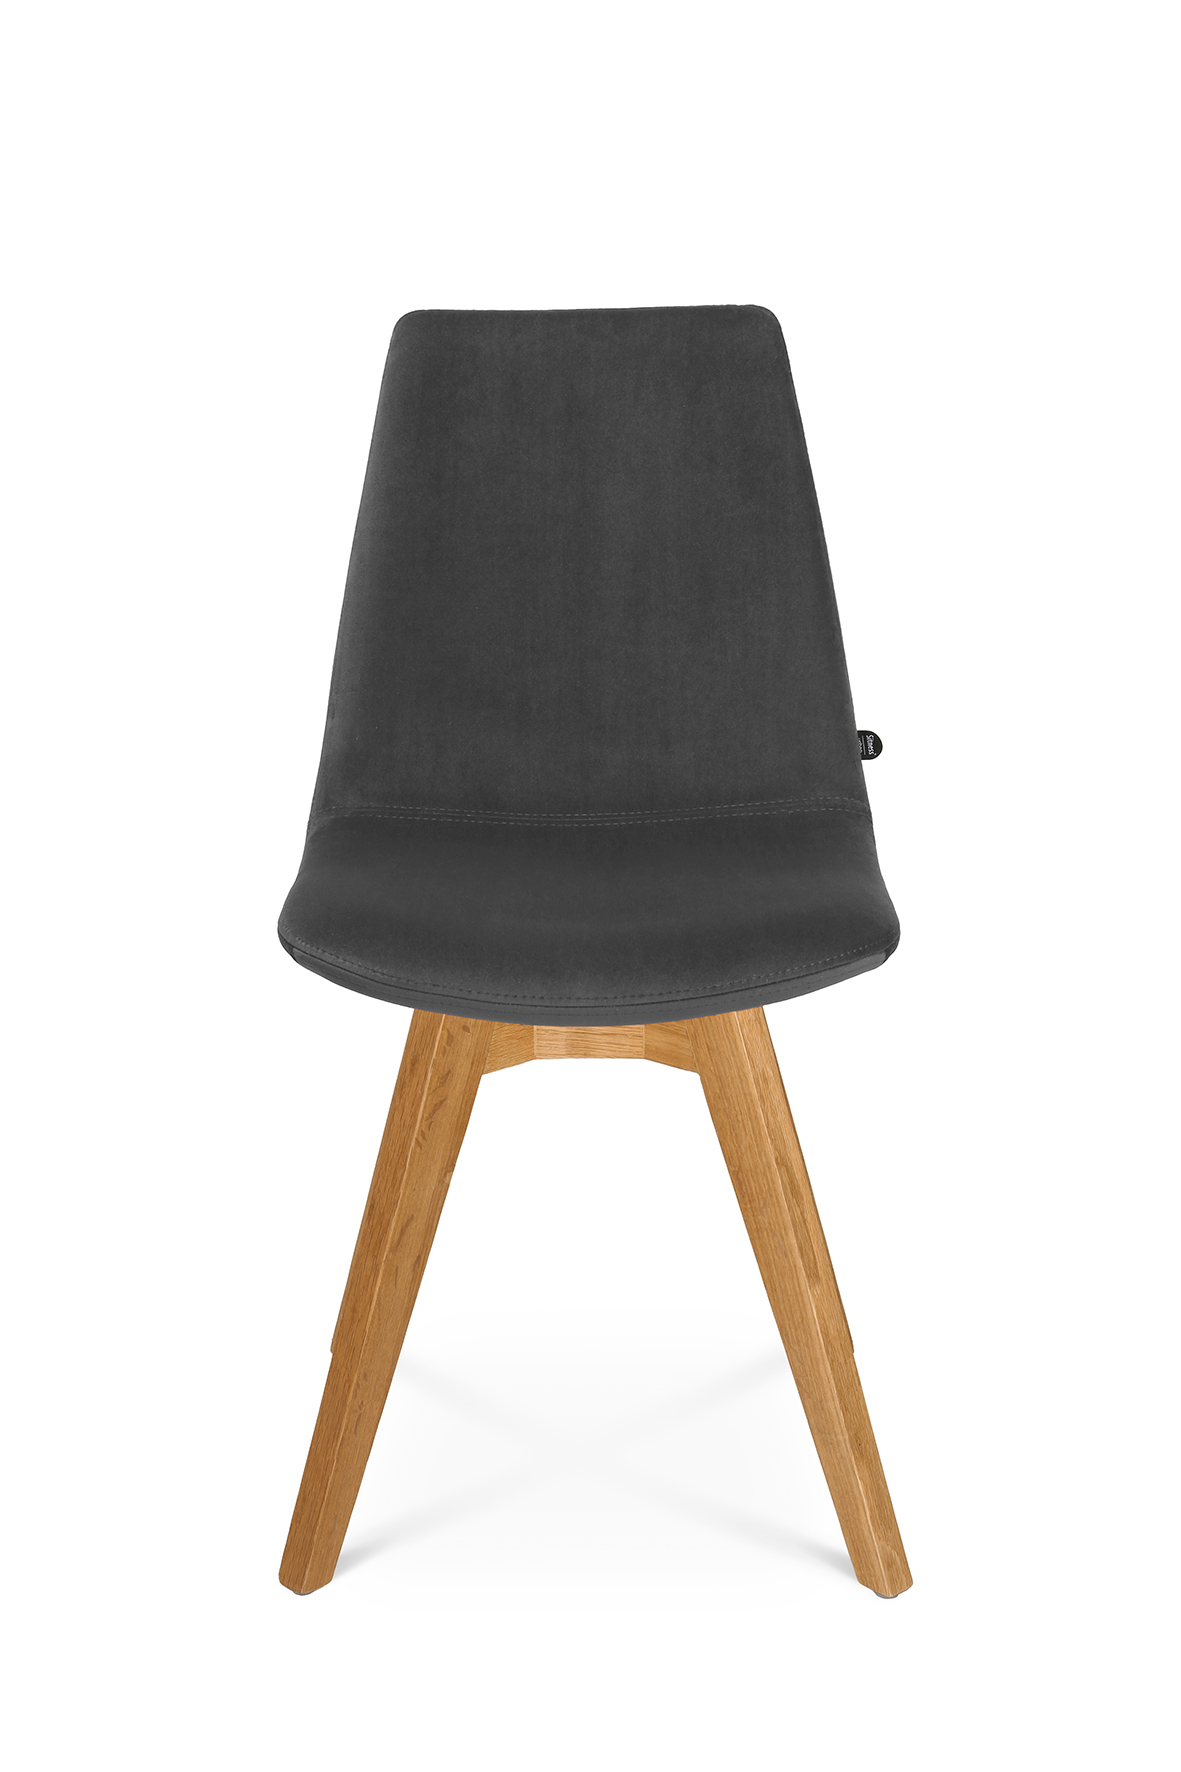 Chaise design avec pieds en bois anguleux